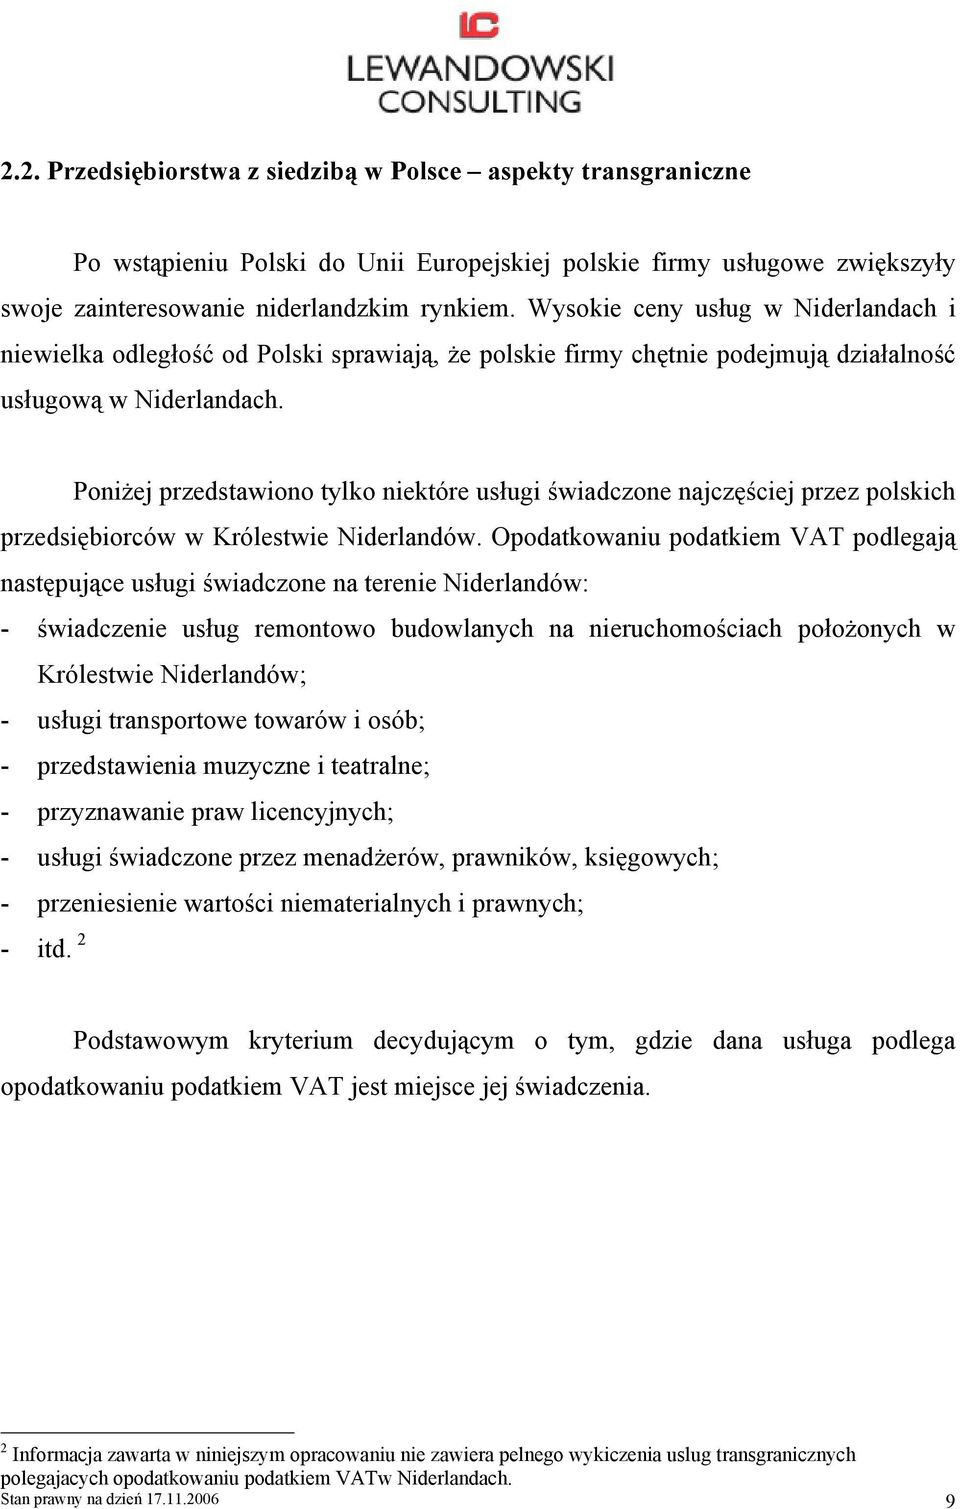 Poniżej przedstawiono tylko niektóre usługi świadczone najczęściej przez polskich przedsiębiorców w Królestwie Niderlandów.